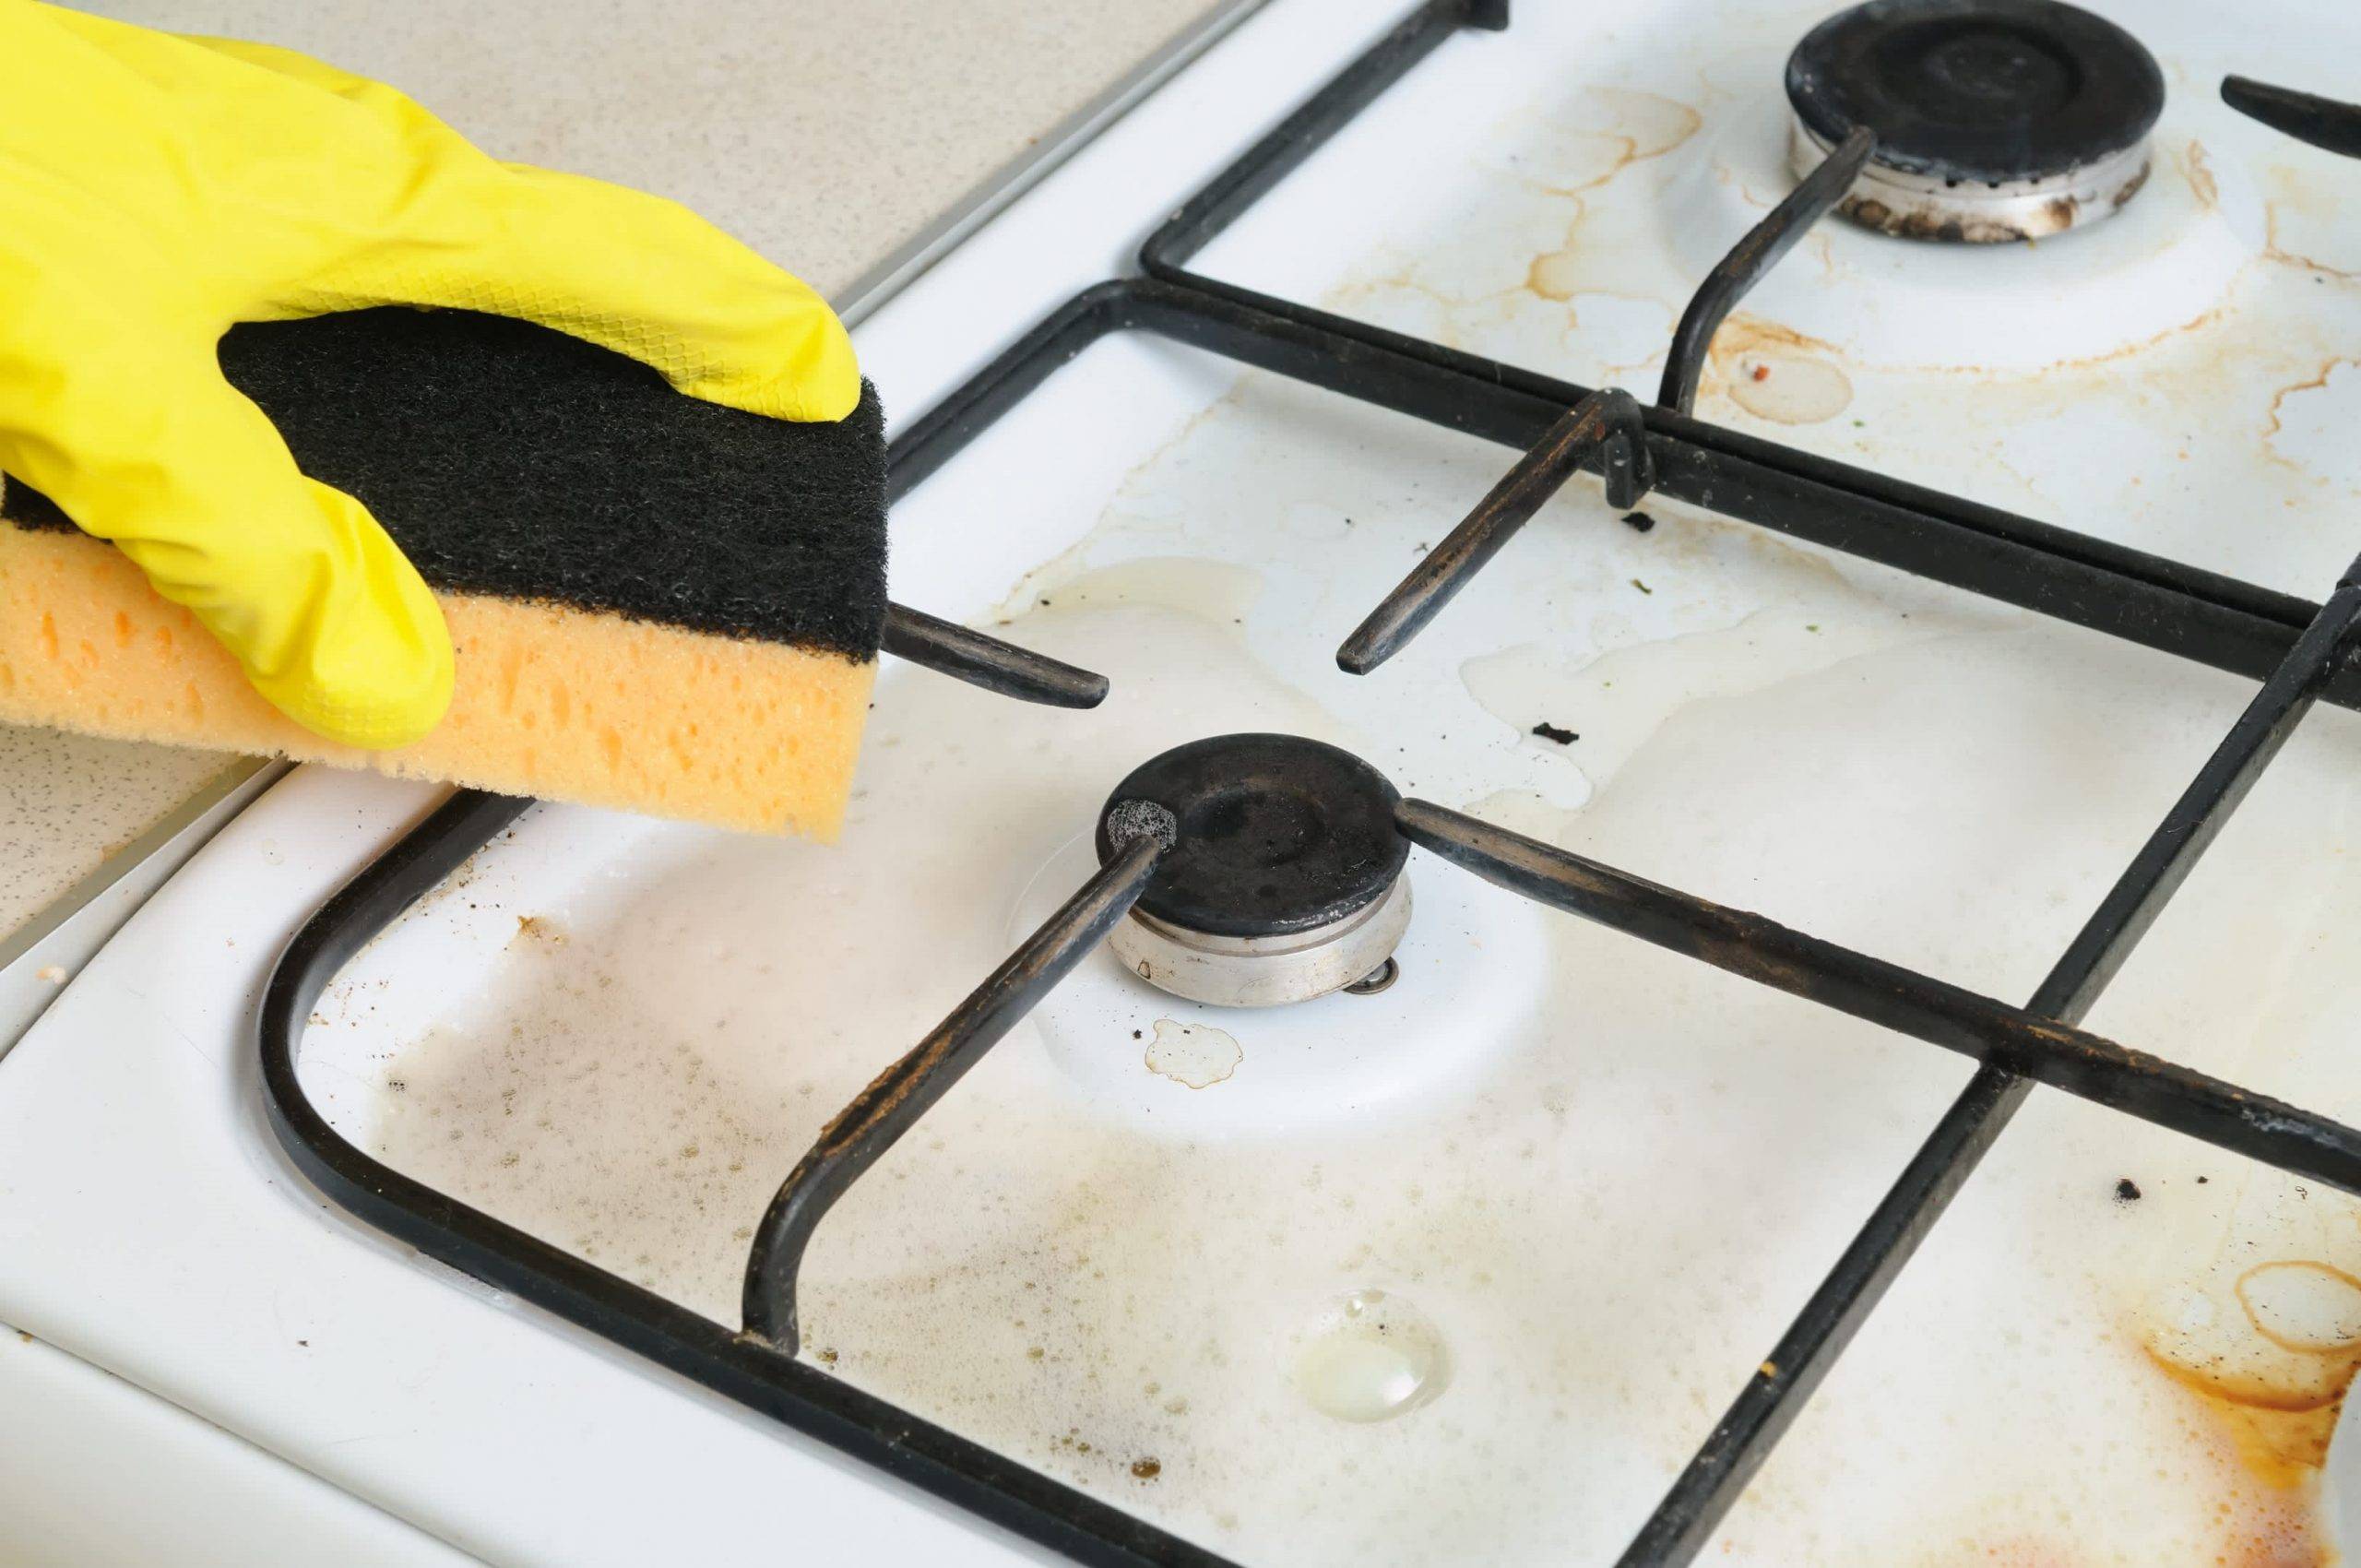 Как очистить плиту от жира и нагара в домашних условиях?